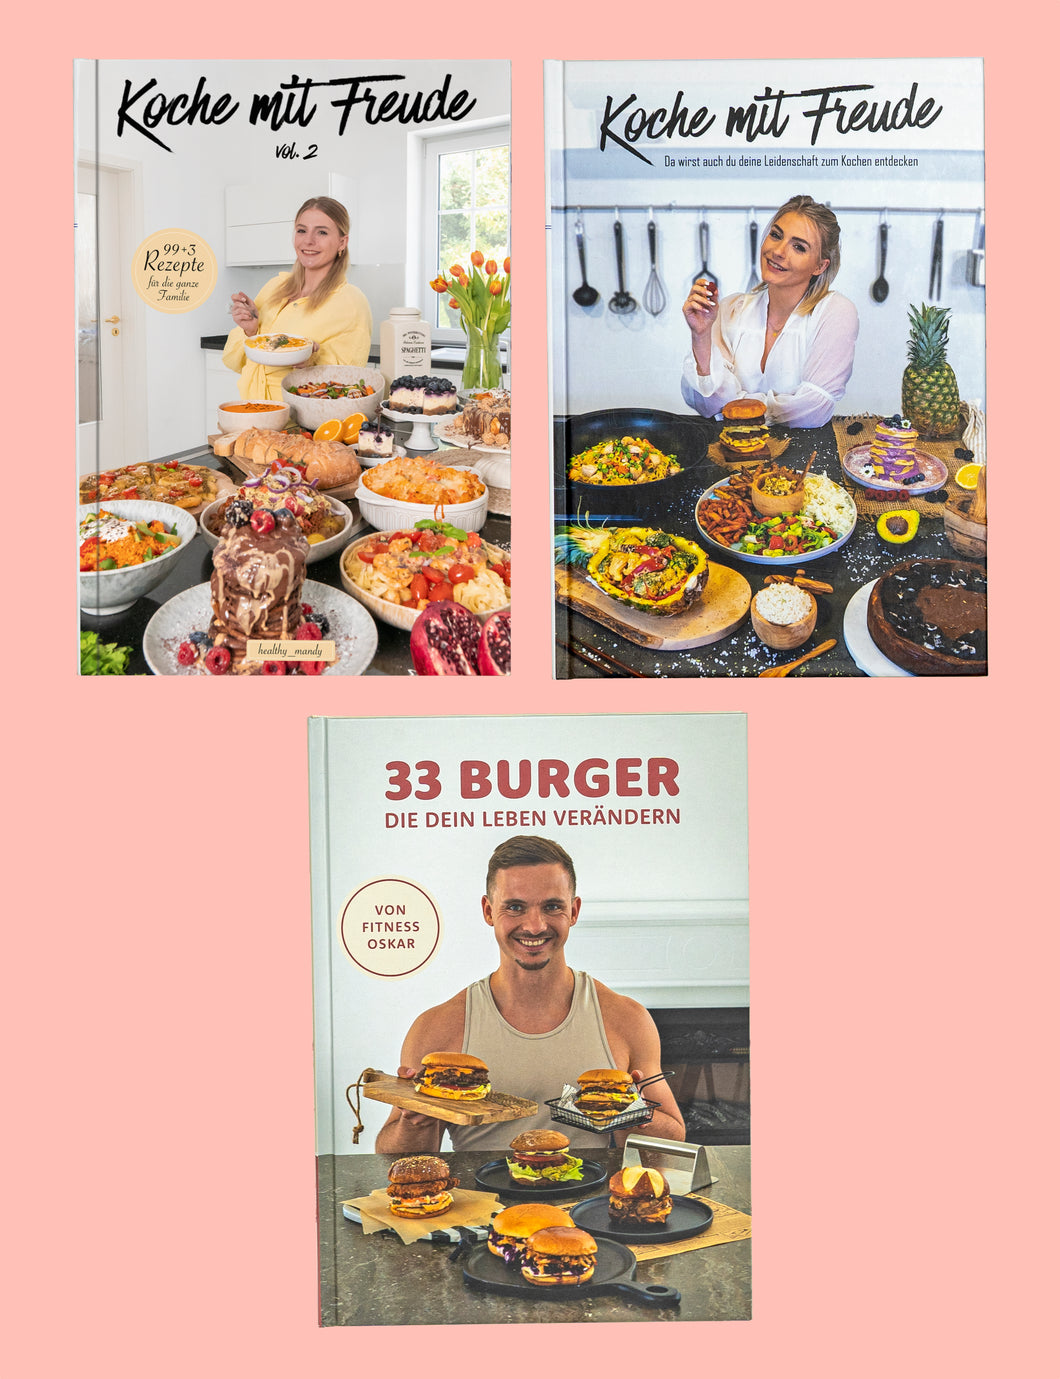 Bundle 3b - Koche mit Freude vol. 2 & vol. 1 + 33 Burger die dein Leben verändern (3 Bücher)